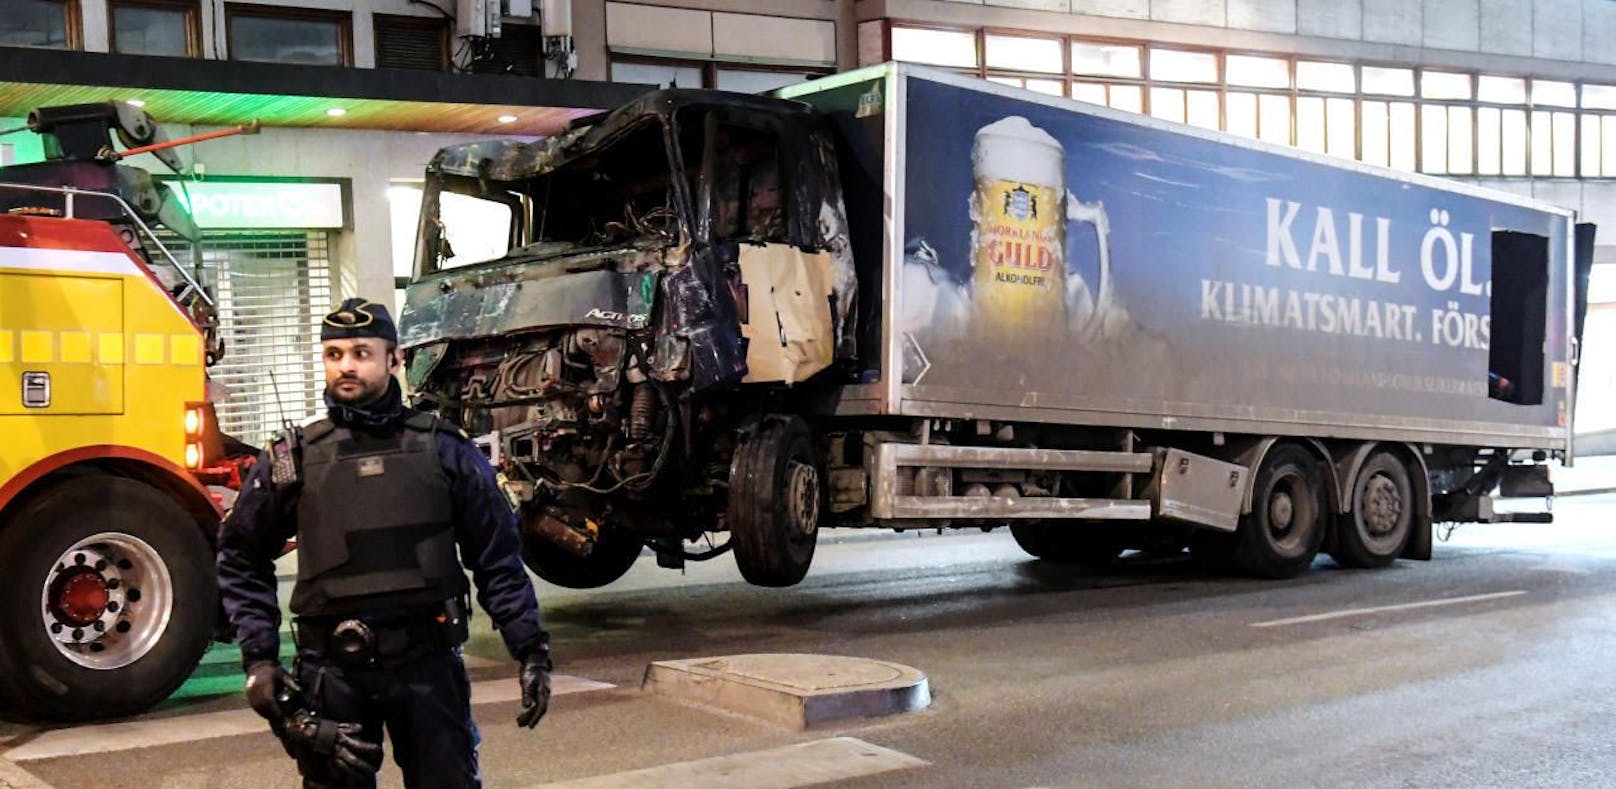 Stockholm: Lkw-Attentäter ist ein 39-jähriger Usbeke